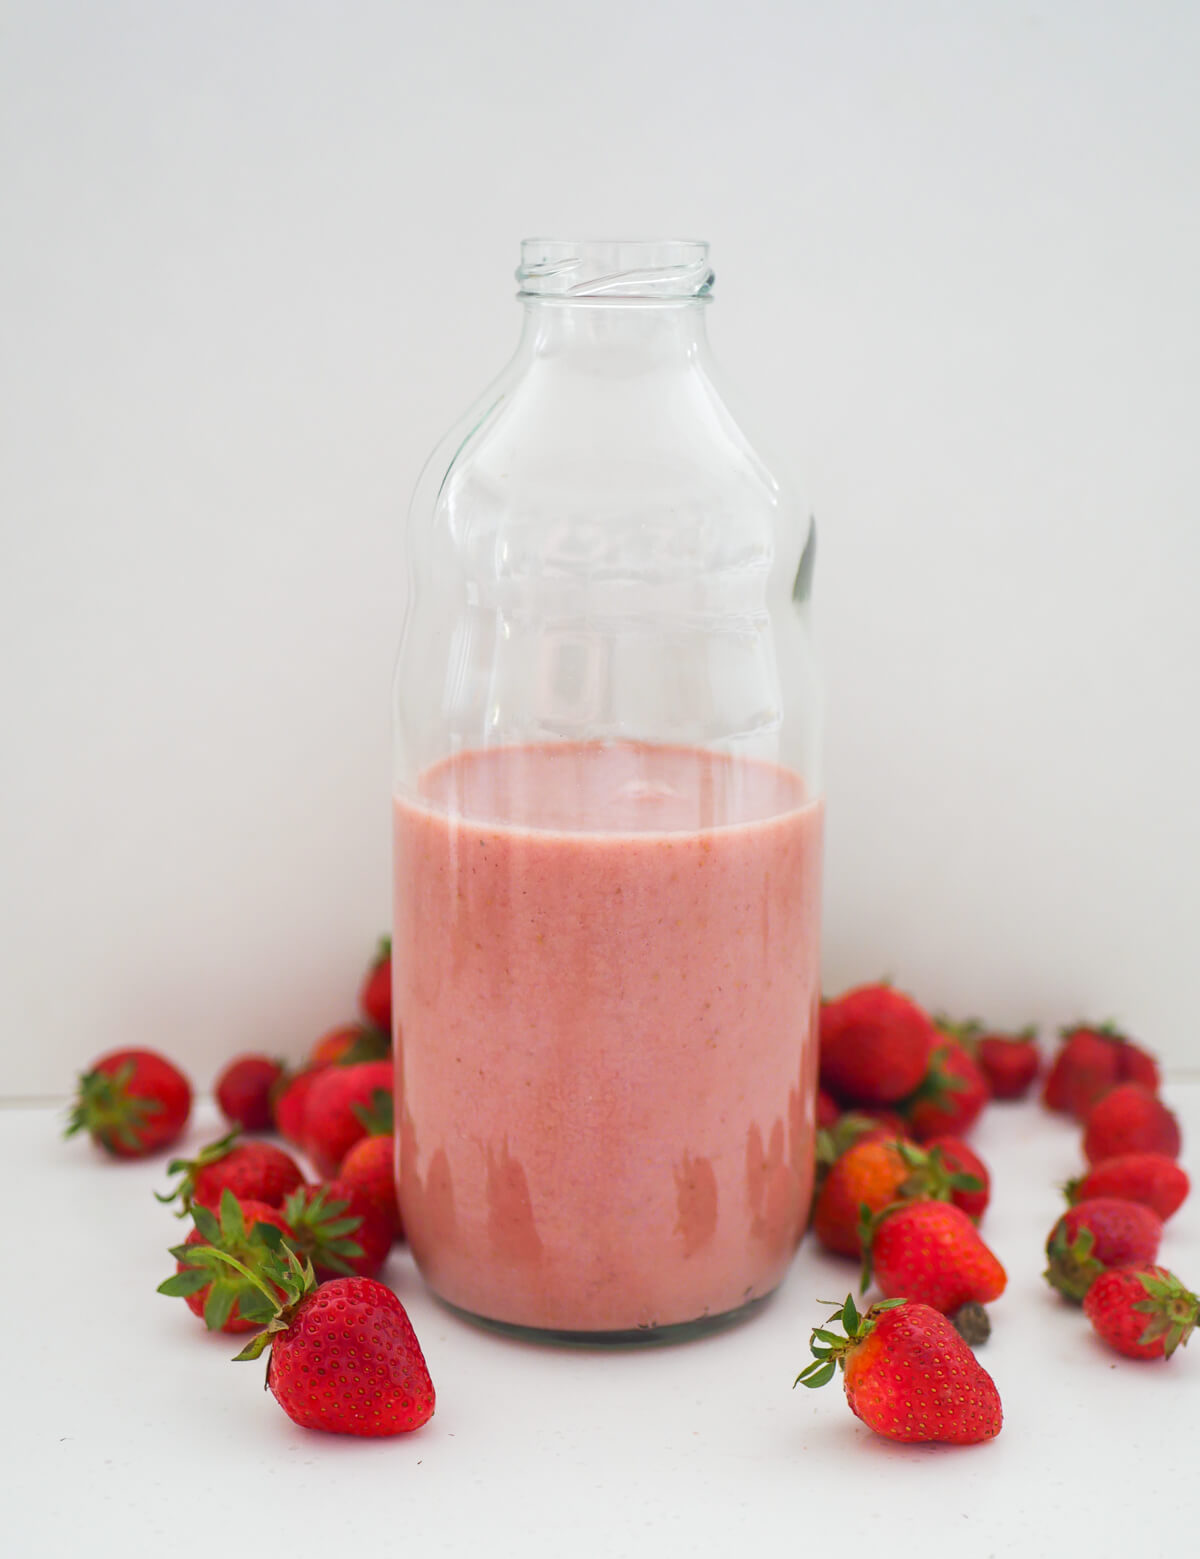 banana strawberry milkshake in a glass bottle